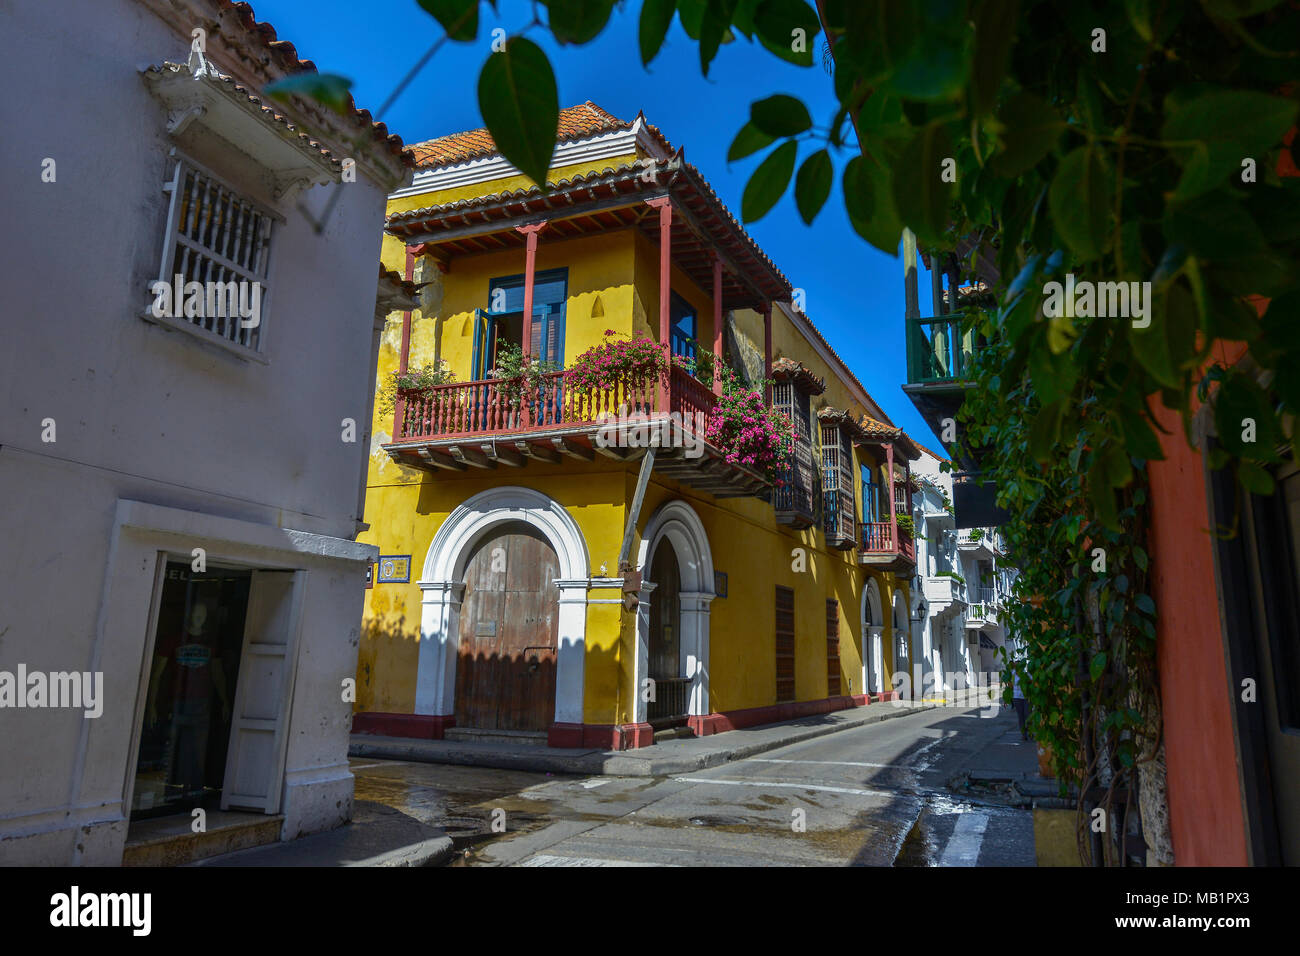 Cartagena, Colombie - 3 août 2017 : la rue Cartagena typique à l'architecture coloniale à Cartagena, Colombie. Banque D'Images